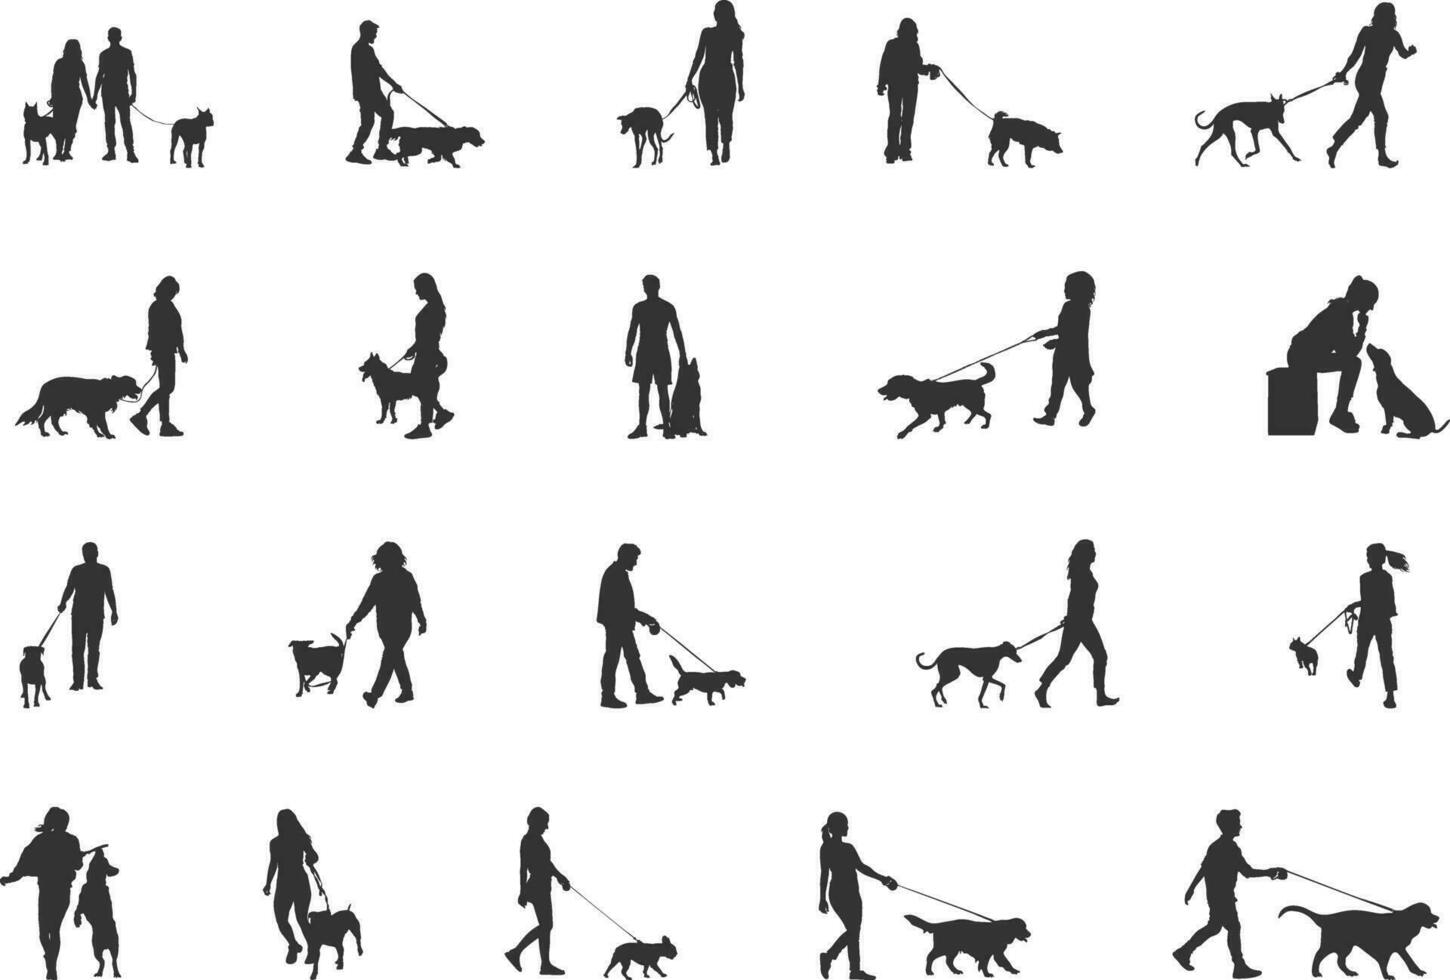 gens en marchant chien silhouettes, homme et femme marcher avec chien silhouette, homme en marchant chien silhouette, femme en marchant chien silhouette, en marchant chien silhouette vecteur